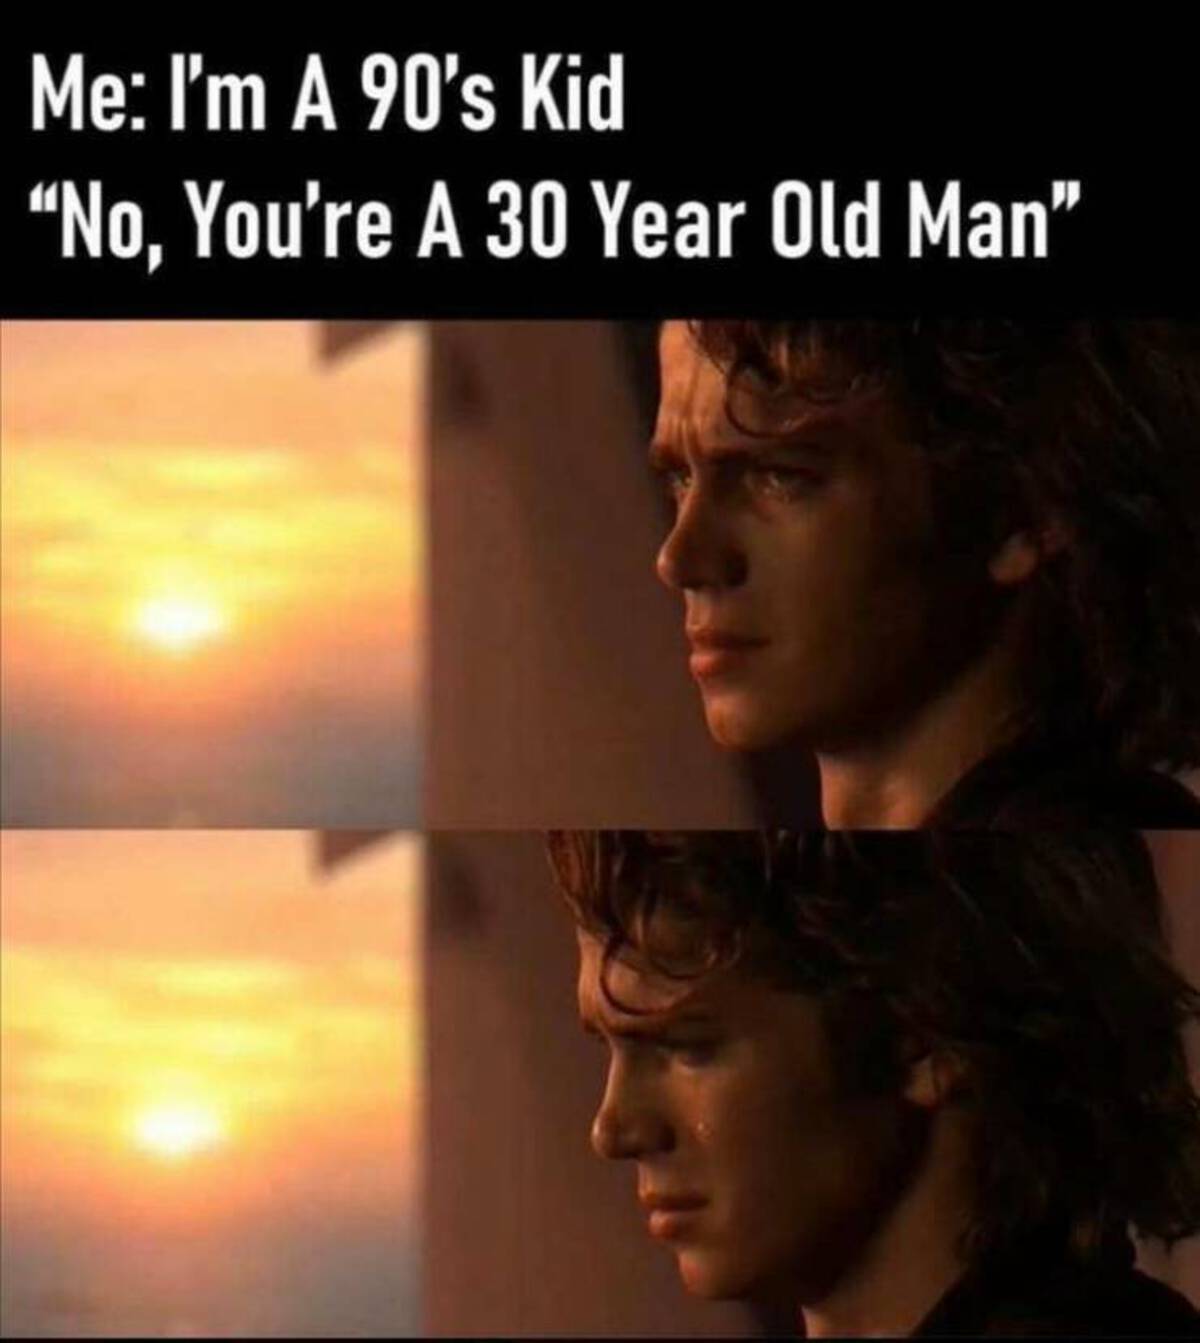 you re not a 90's kid you re a 30 year old man - Me I'm A 90's Kid "No, You're A 30 Year Old Man"